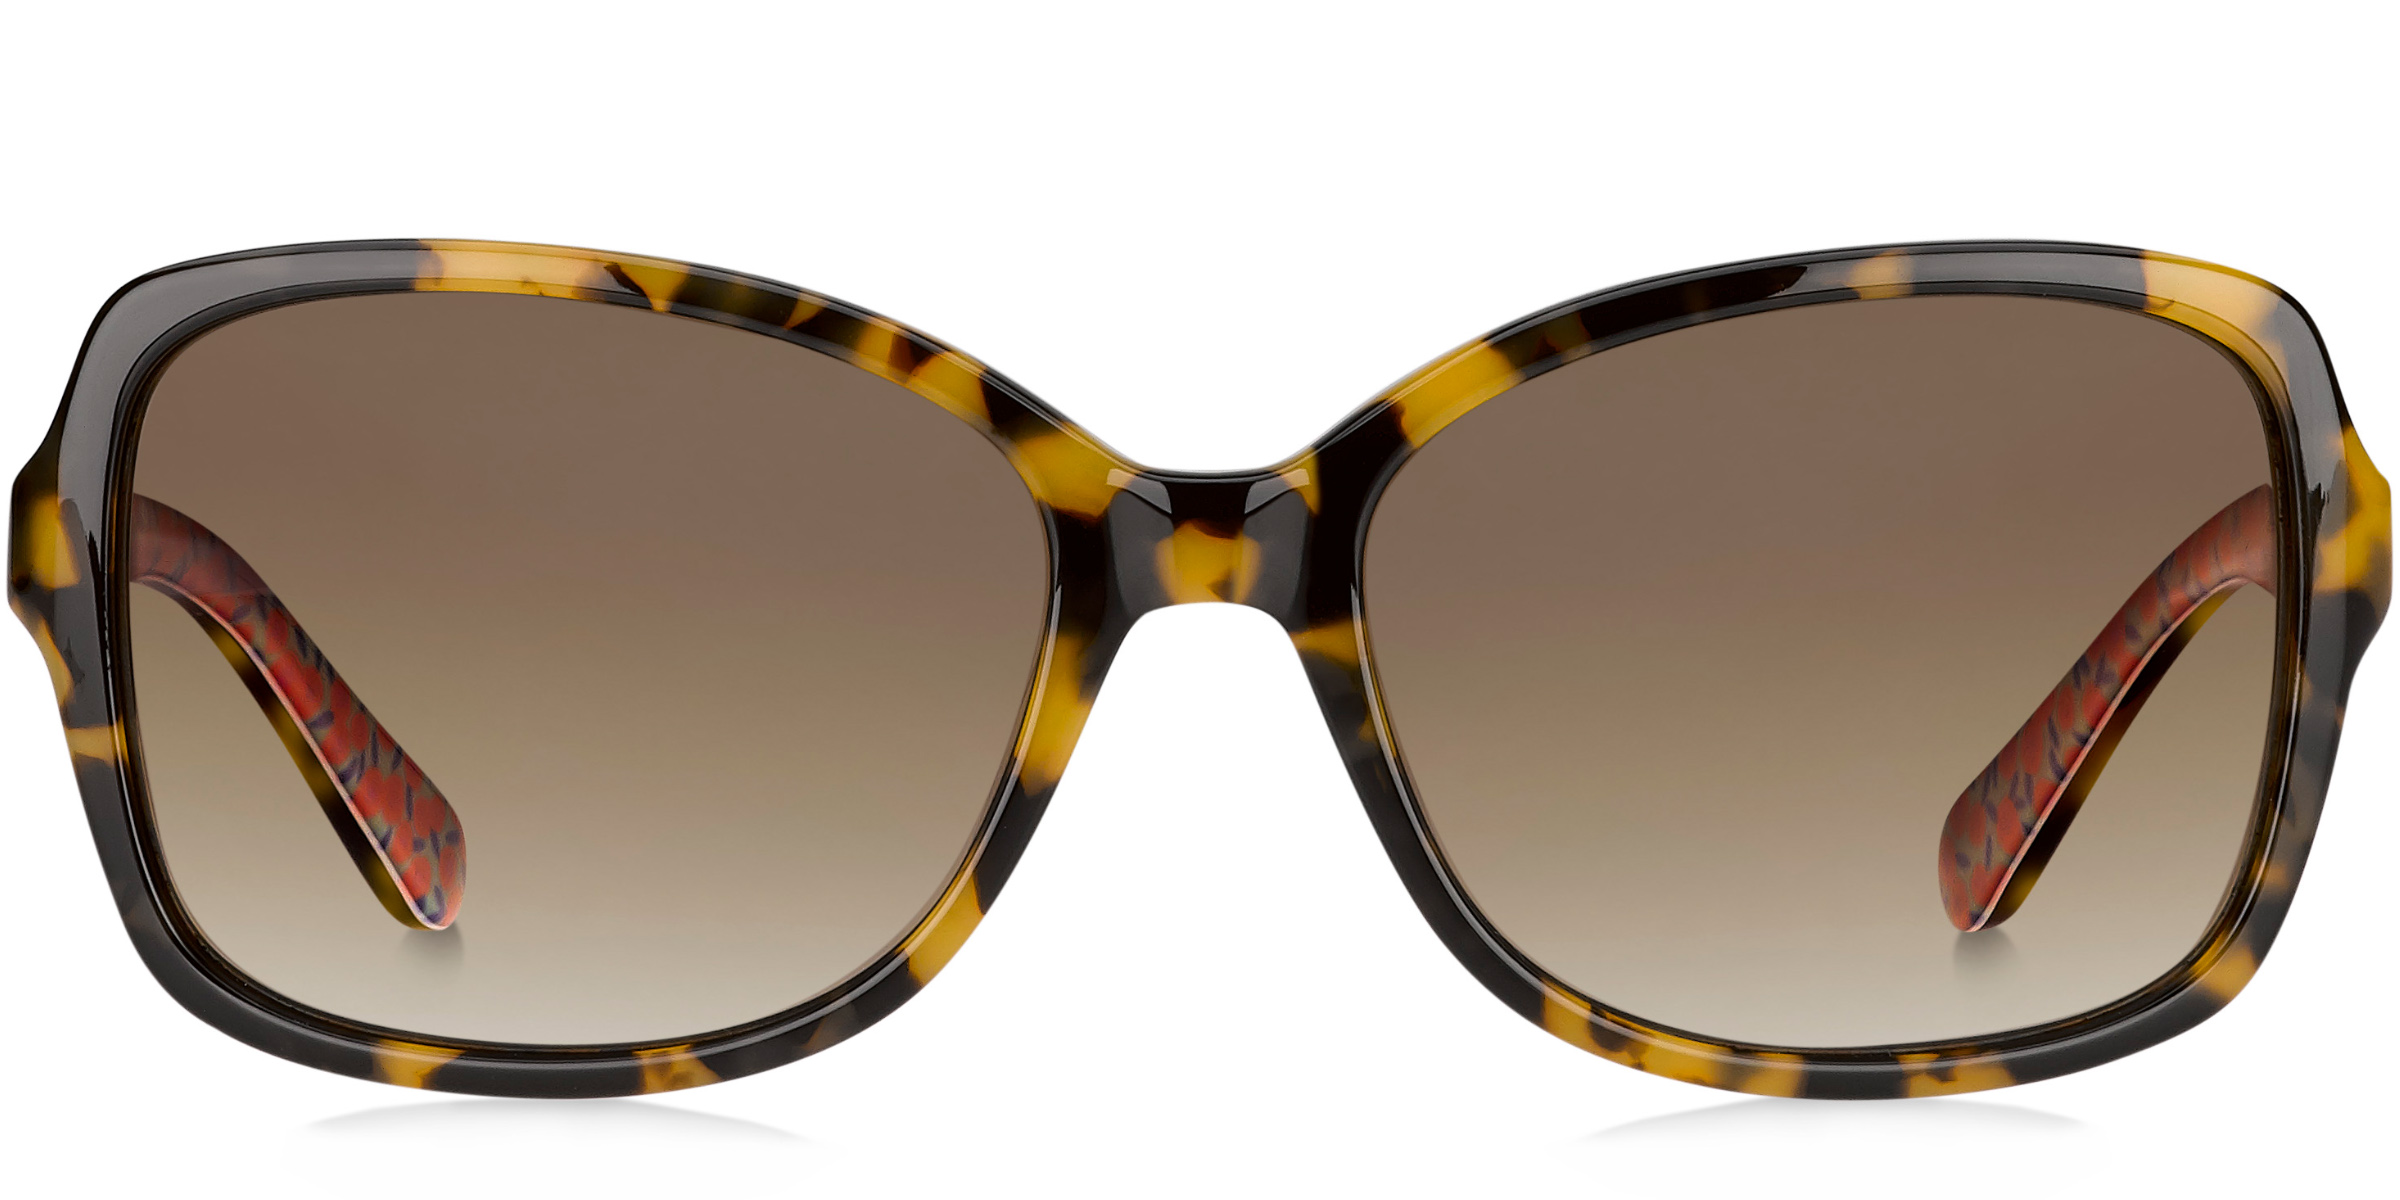 Buy Kate Spade Ayleen sunglasses for women at For Eyes